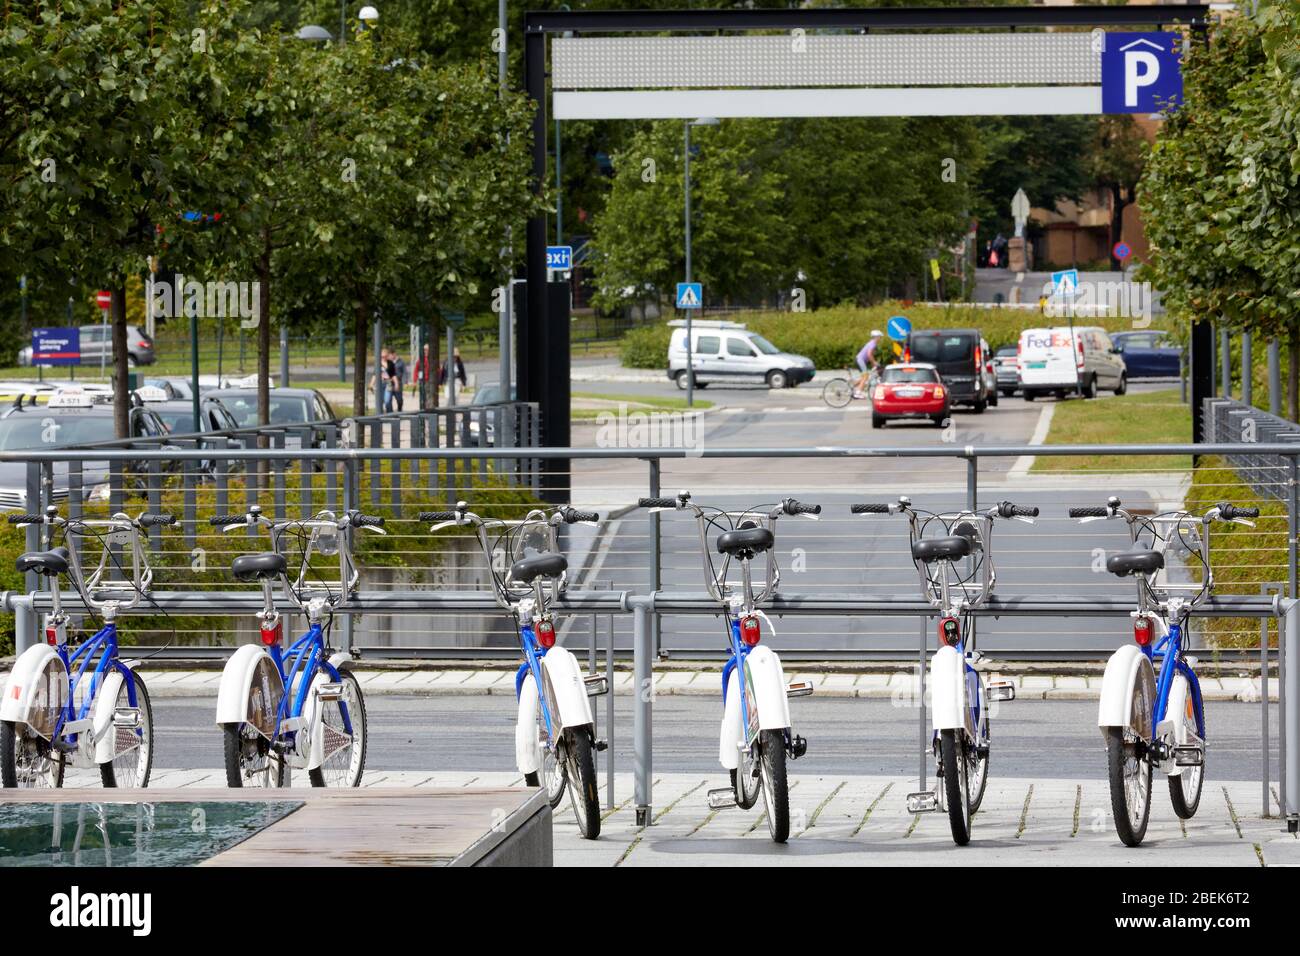 Programme de partage de vélos Bysykkel City vélos location de vélos à Oslo, Norvège, Europe Banque D'Images